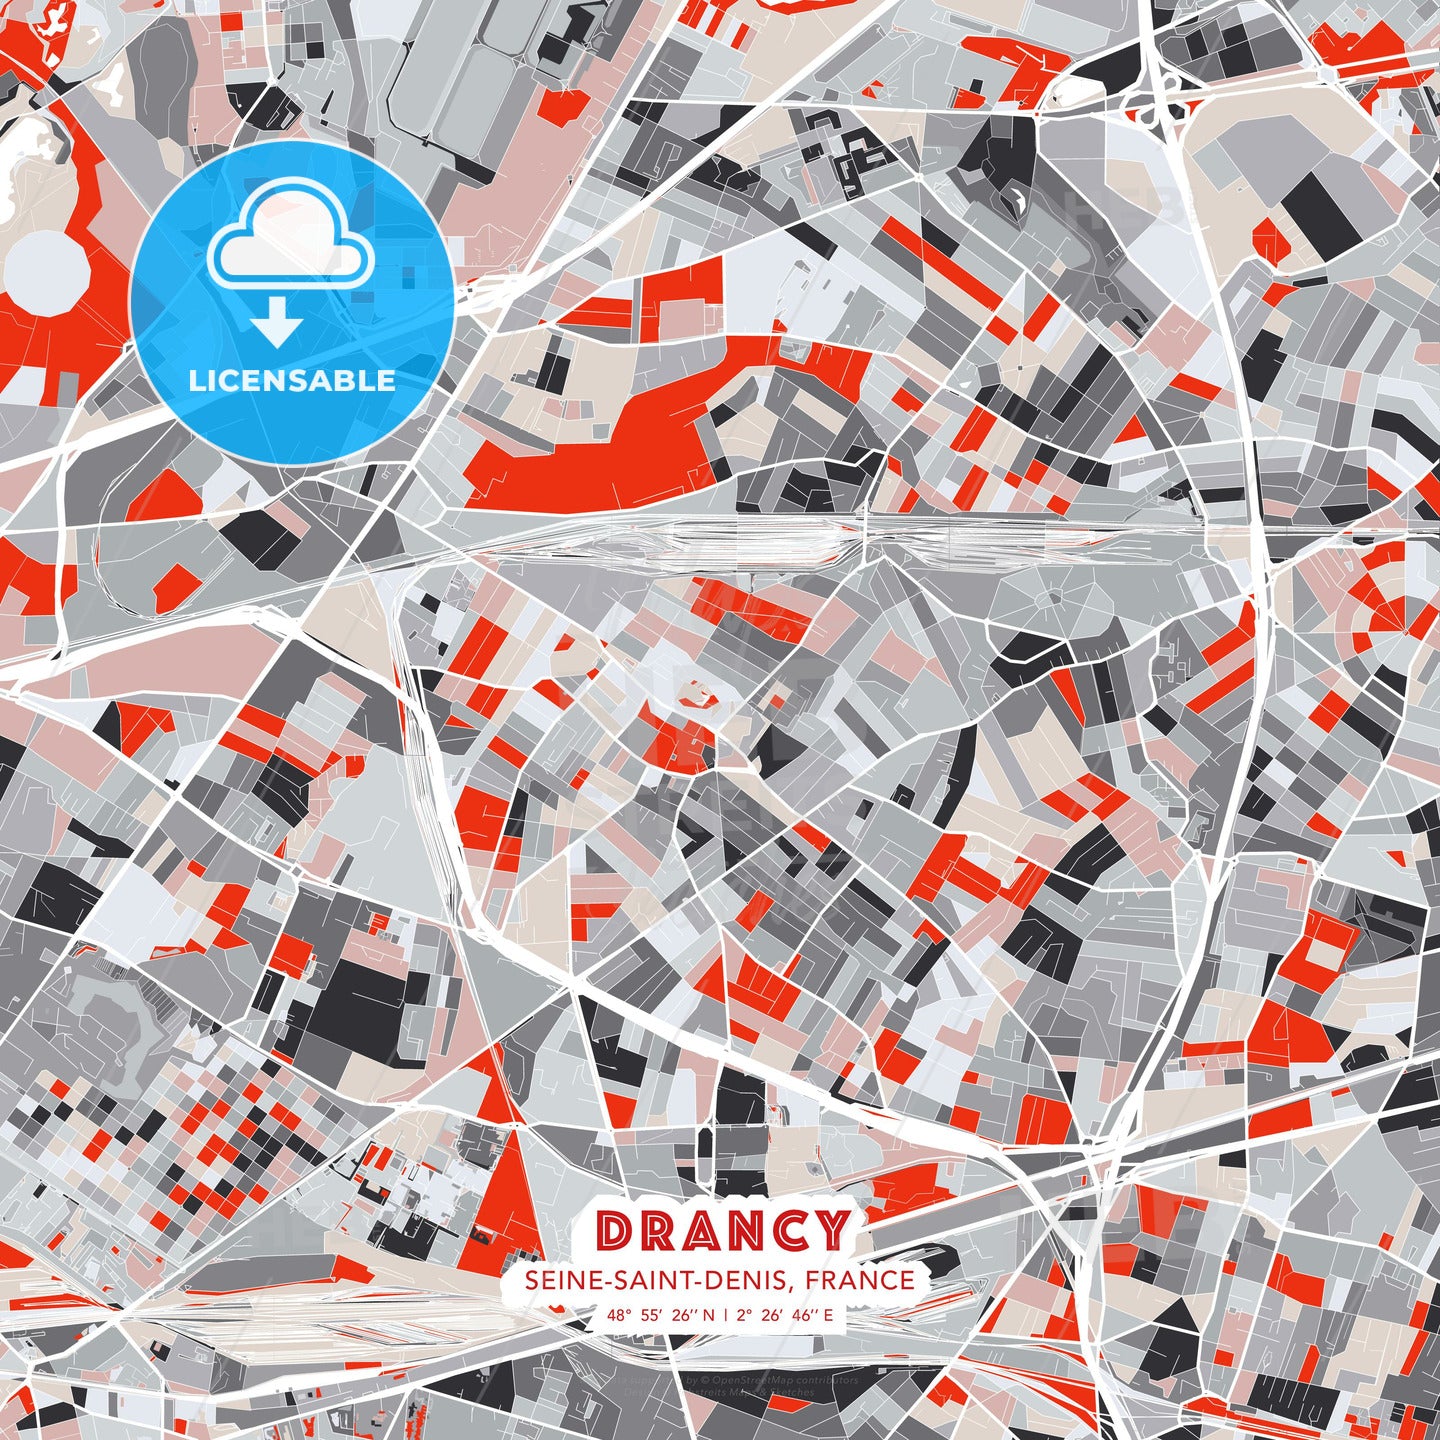 Drancy, Seine-Saint-Denis, France, modern map - HEBSTREITS Sketches